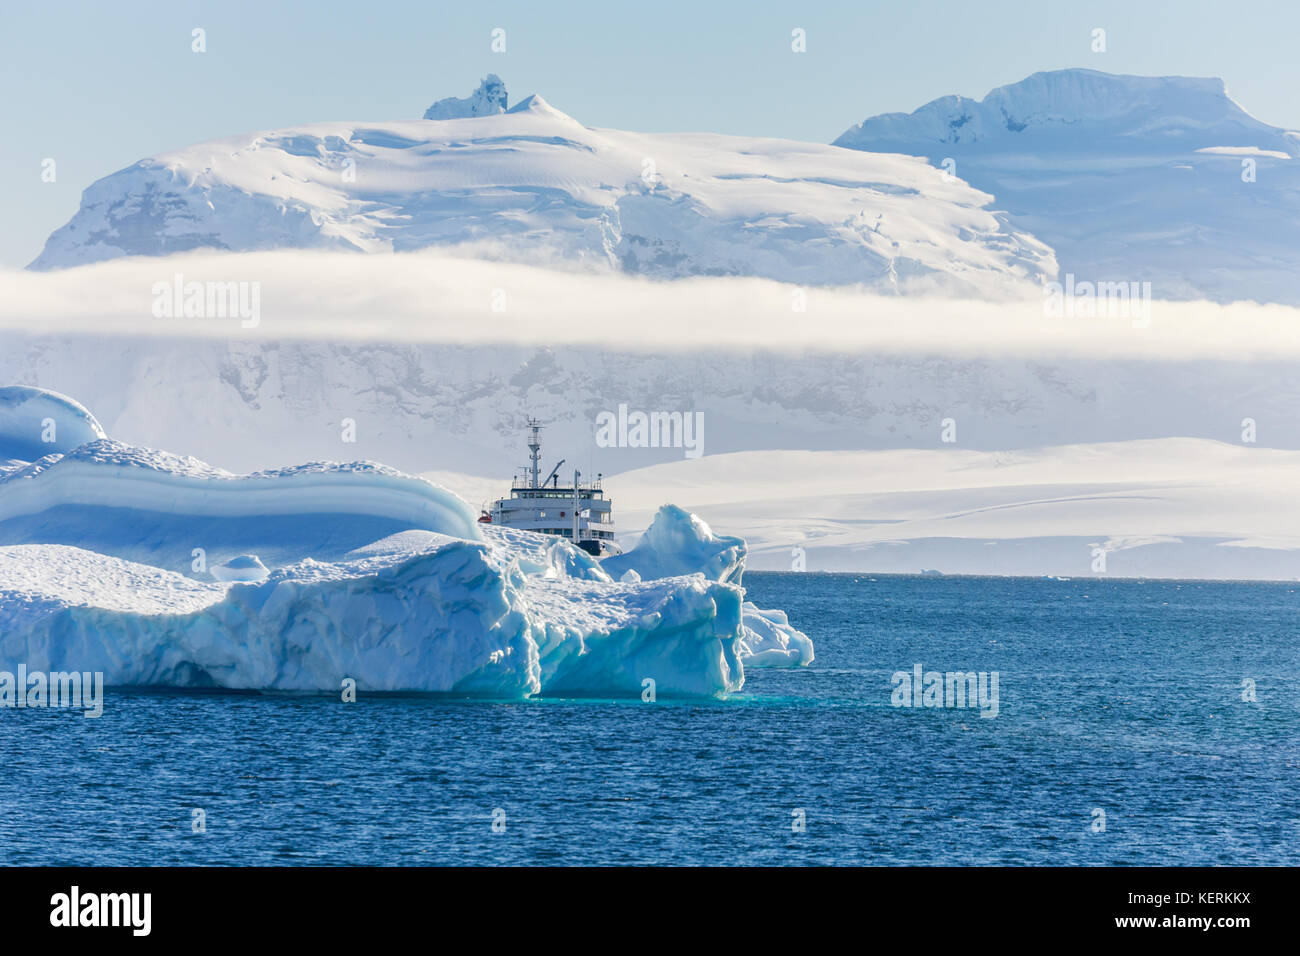 Antartico blu nave da crociera tra gli iceberg con ghiacciaio in background, Neko bay, Antartide Foto Stock